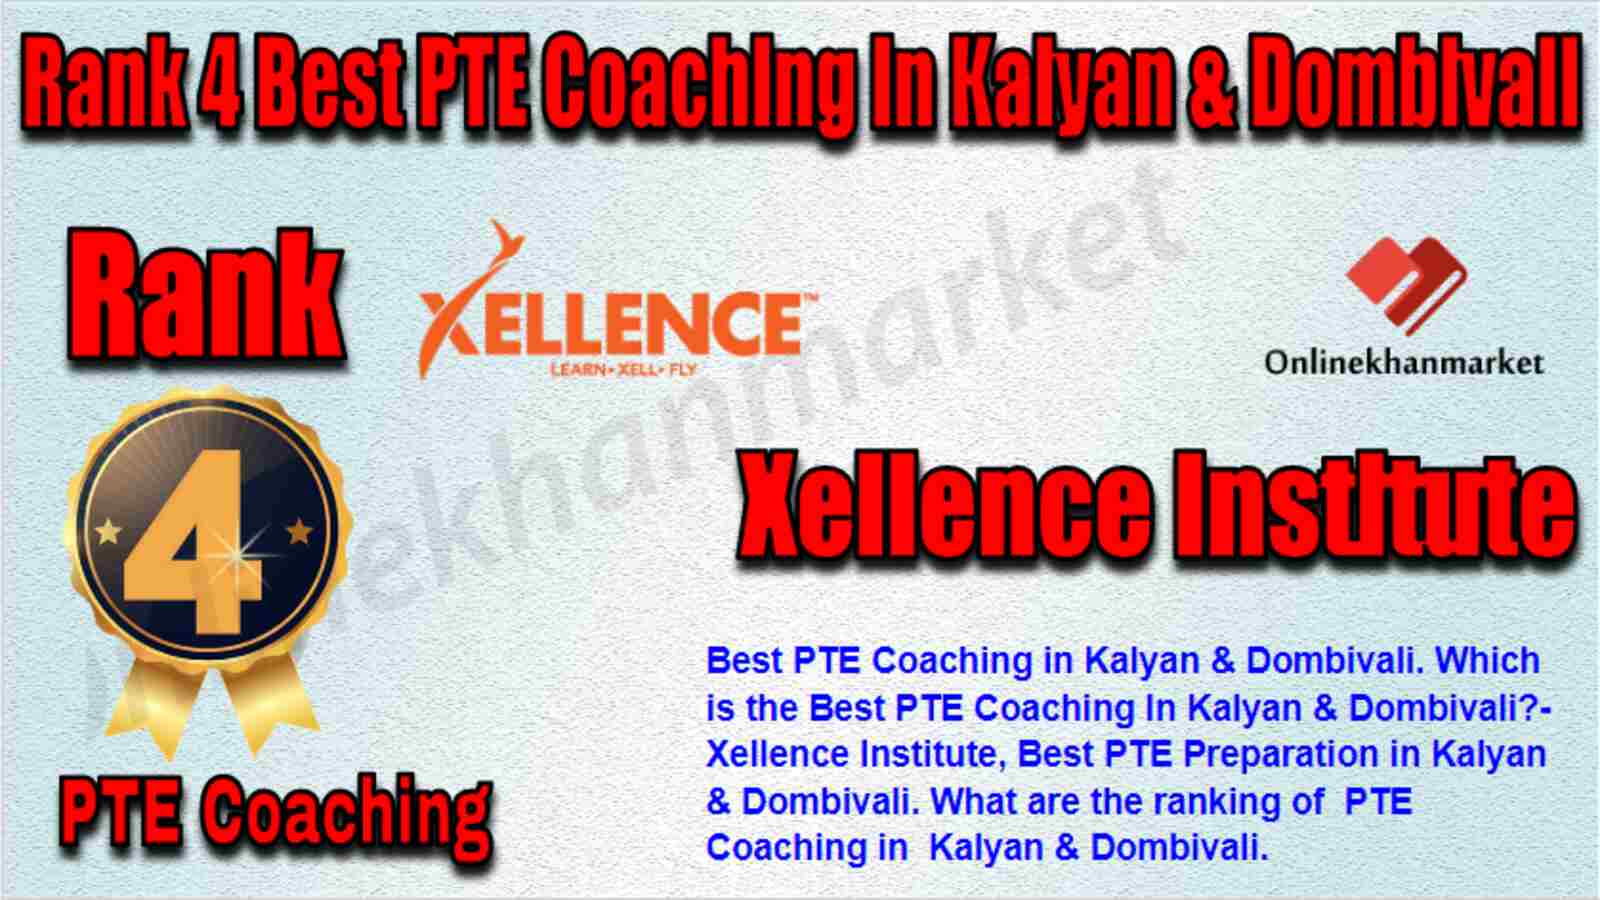 Rank 4 Best PTE Coaching in Kalyan & Dombivali